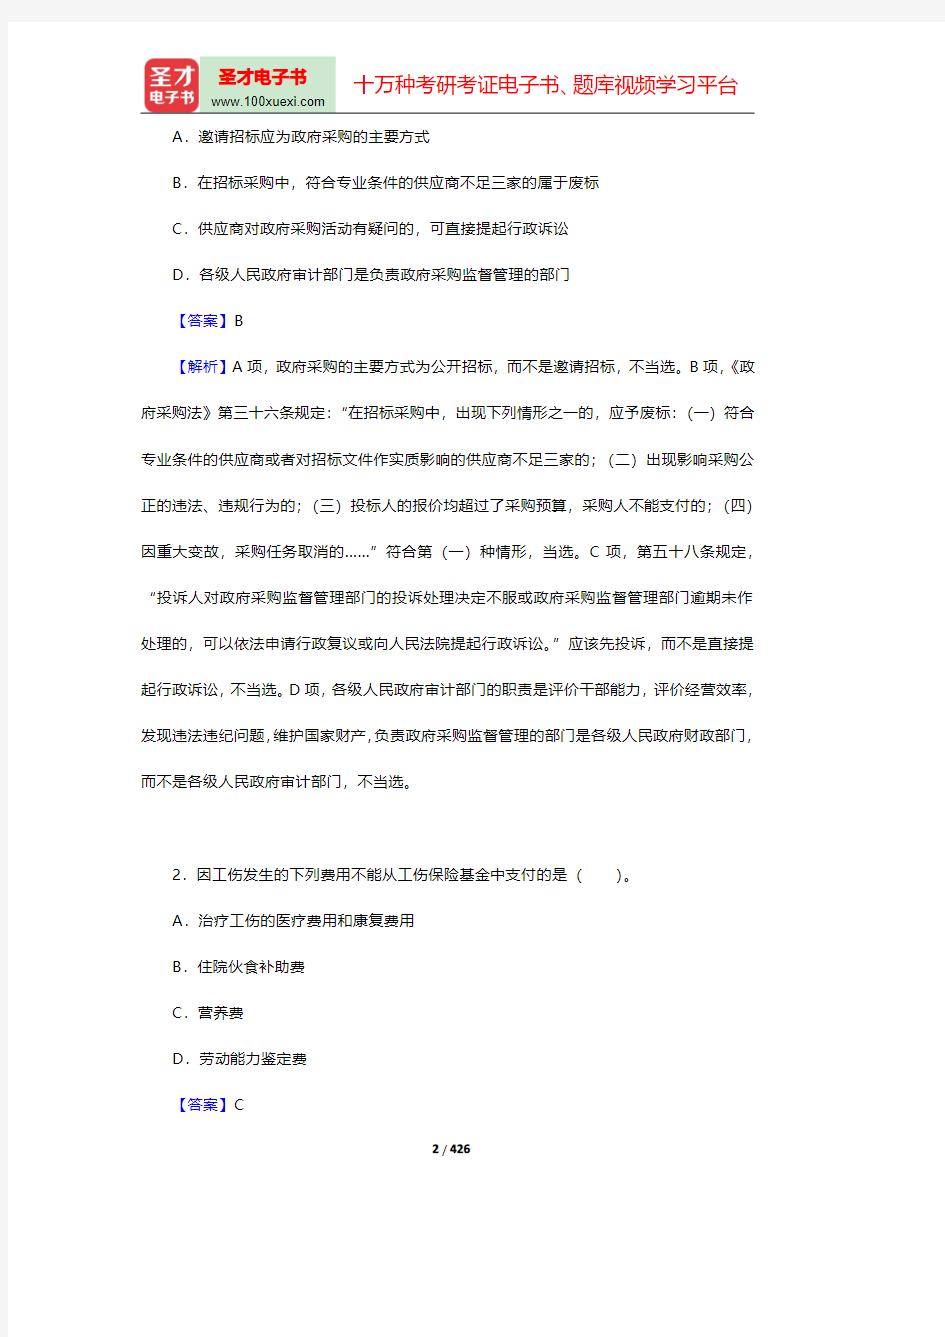 上海市事业单位招聘考试《职业能力倾向测验》题库-历年真题【圣才出品】